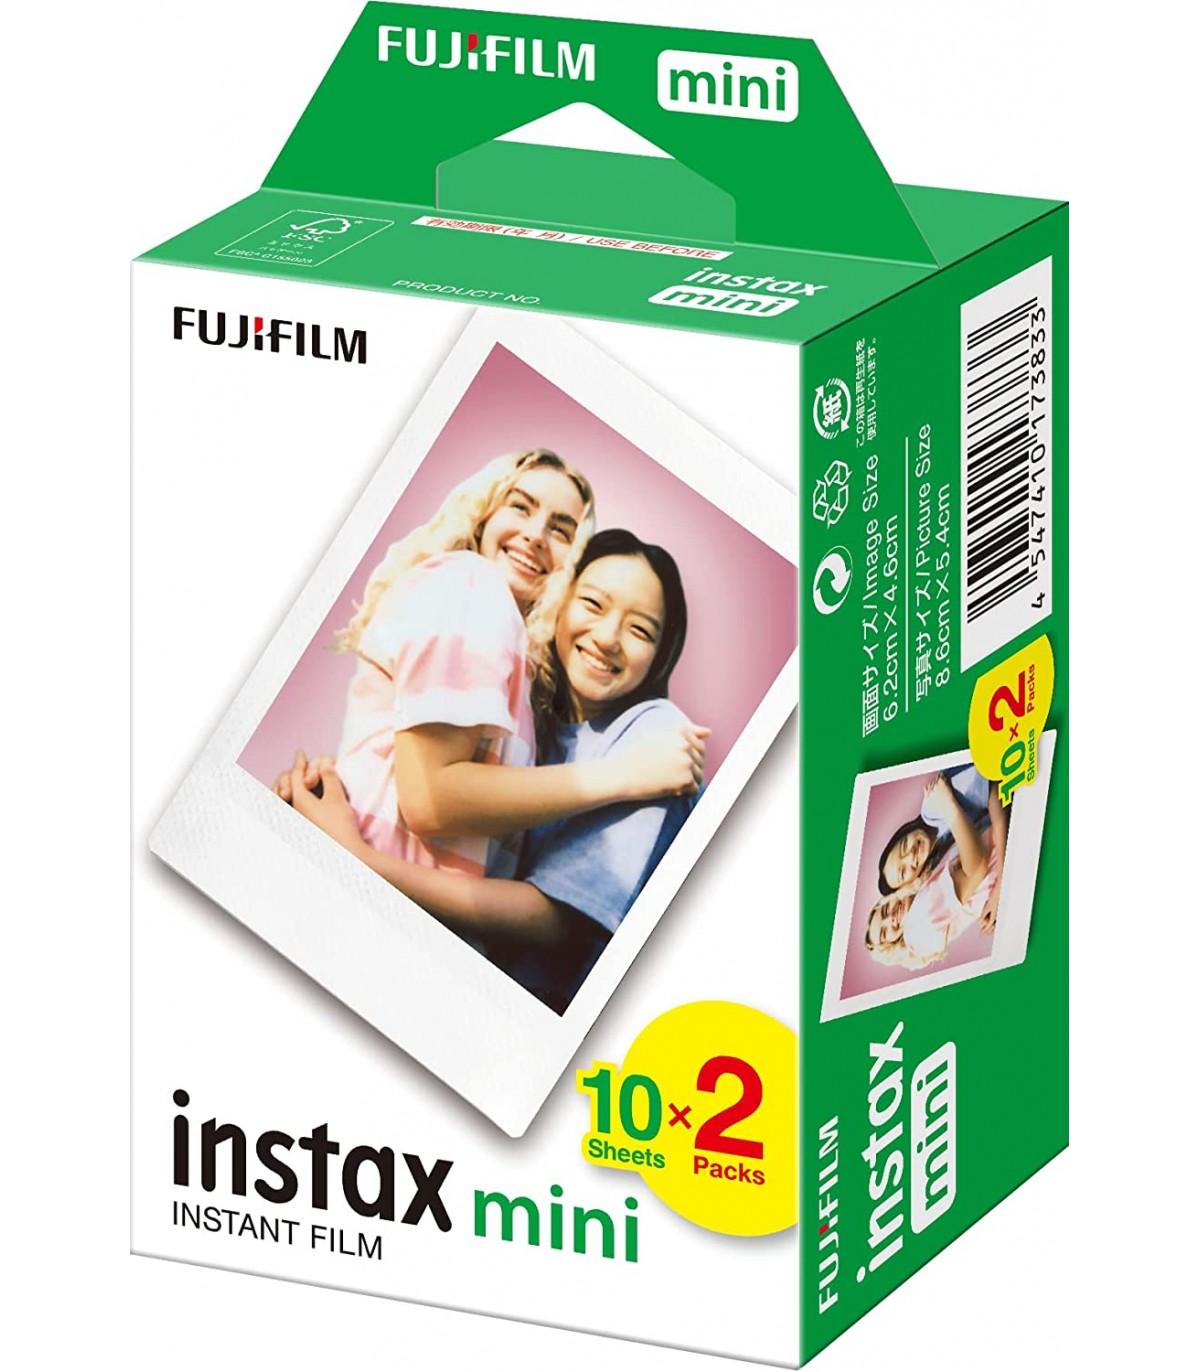 Impresoras - INSTAX by Fujifilm (España)